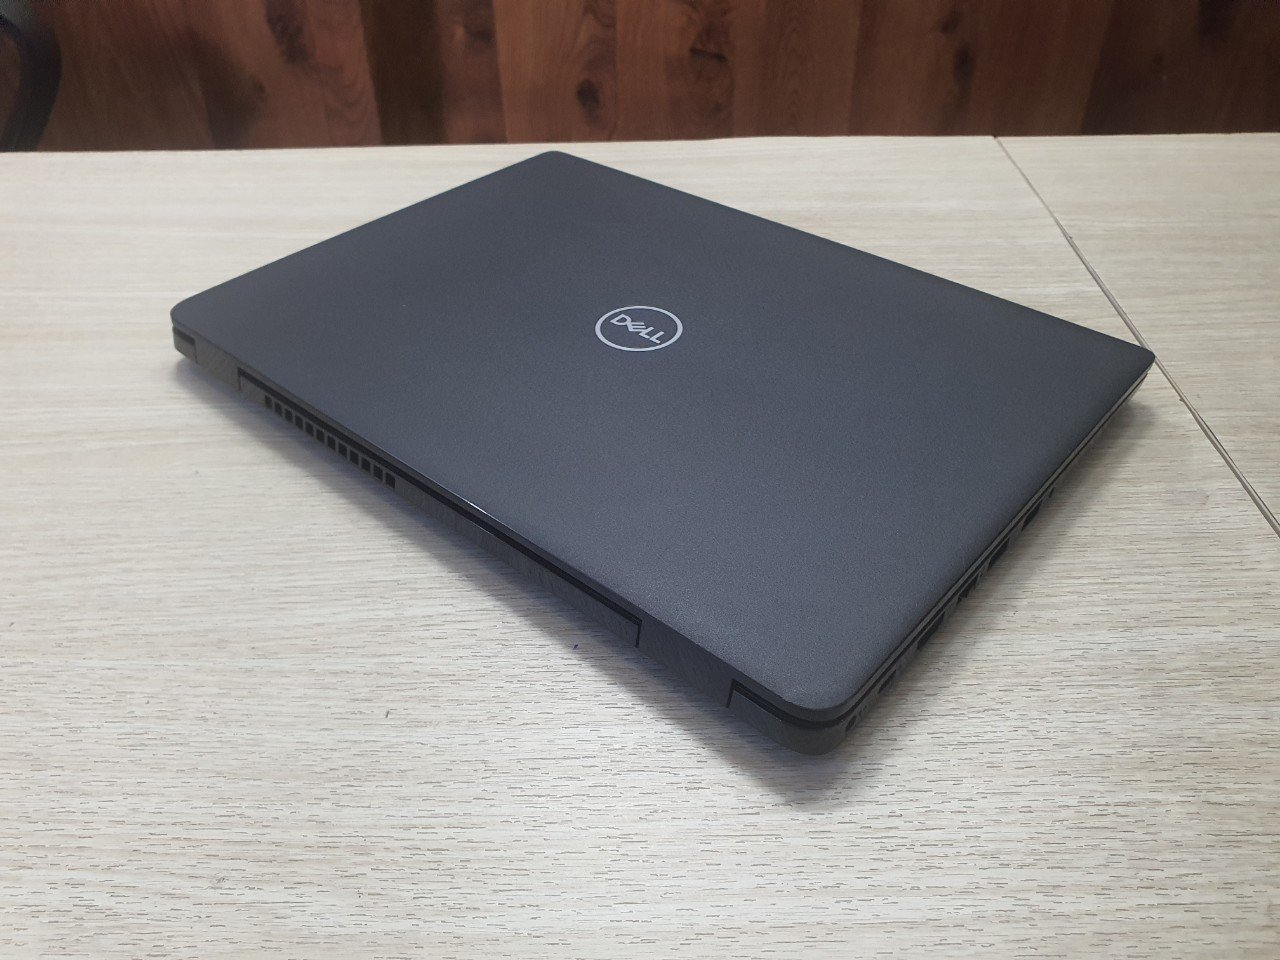 Khuyến mãi lớn: Mua Laptop Dell tại Thủ Dầu Một - Giảm ngay 200k khi check-in! - Ảnh 1